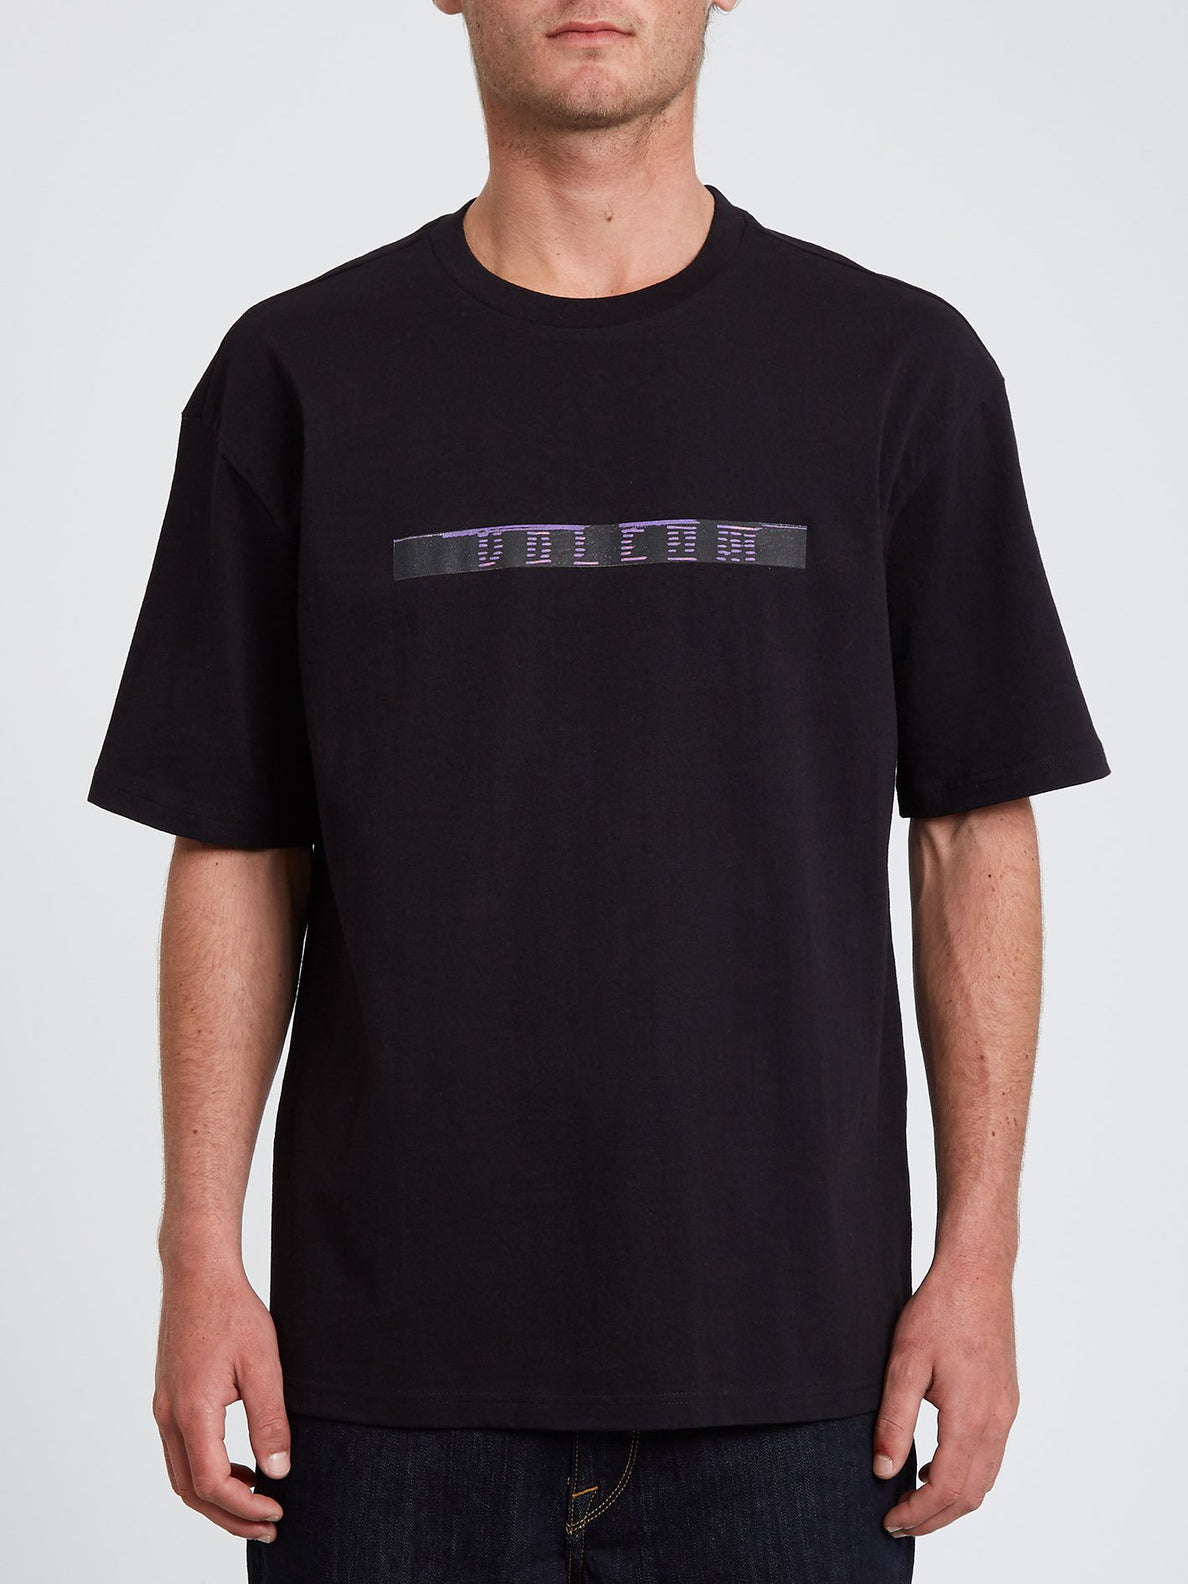 Flowscillator T-shirt - BLACK (A4332107_BLK) [B]